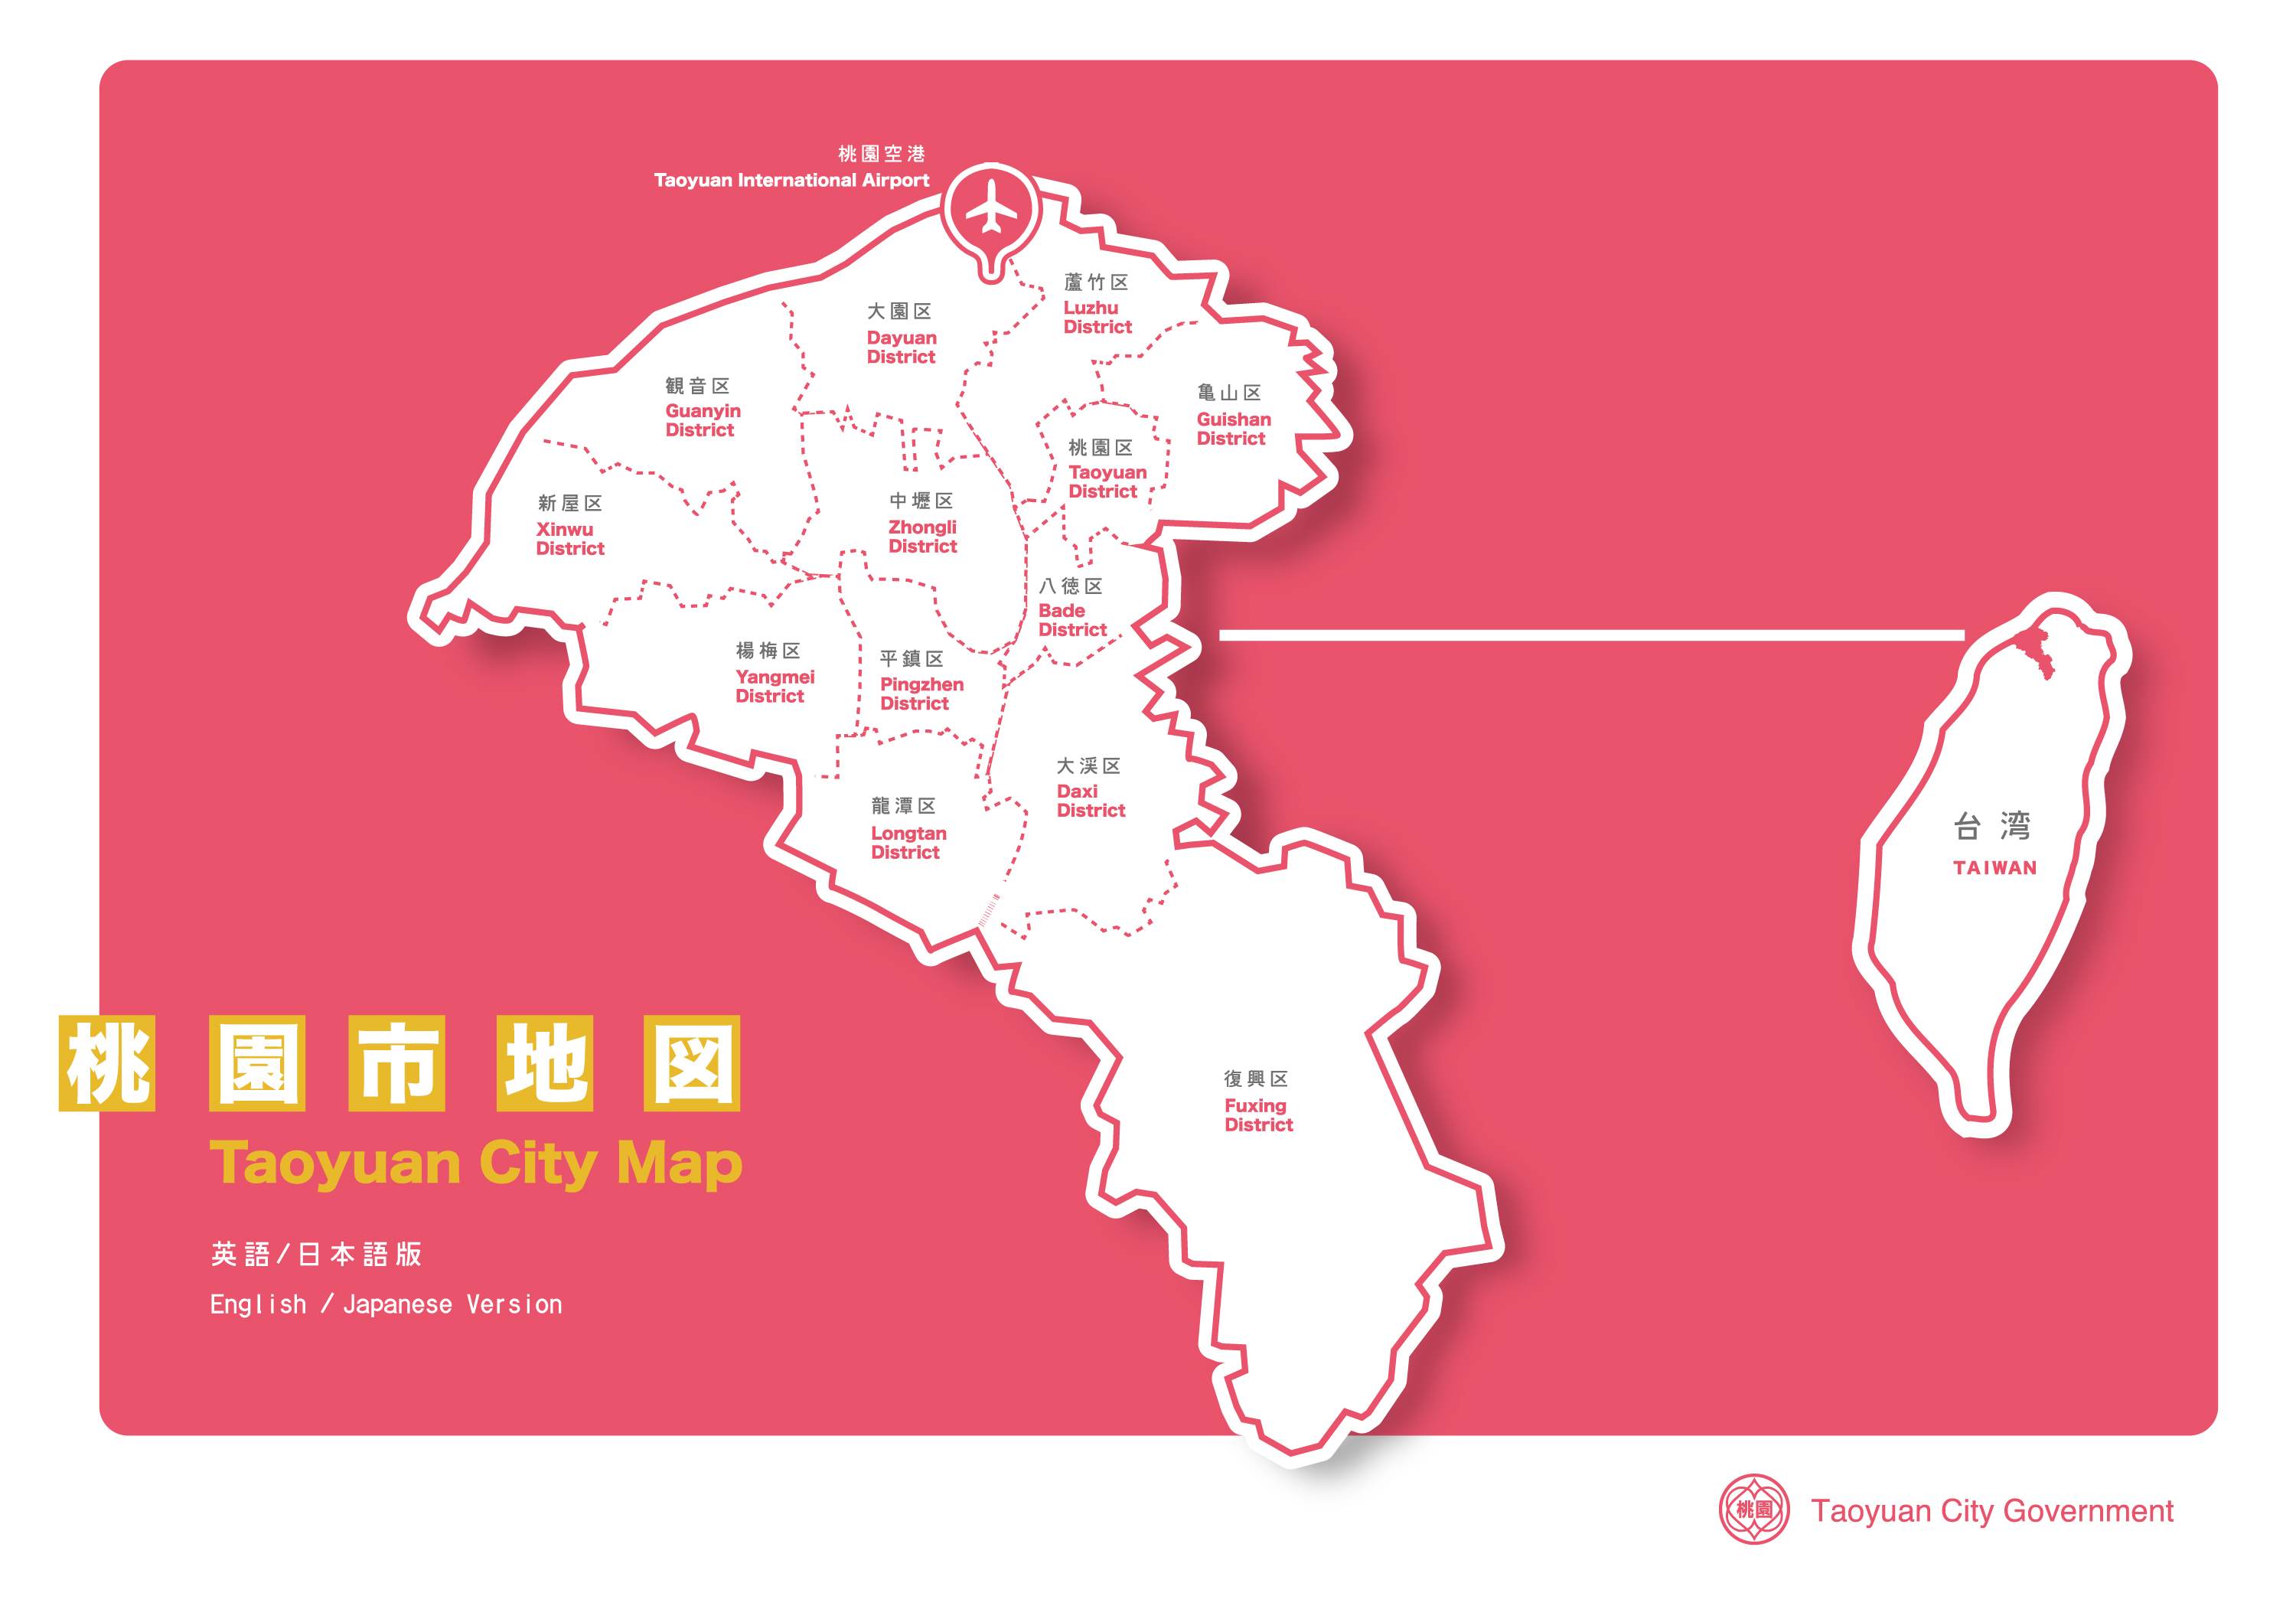 台湾・桃園市の位置を表した地図